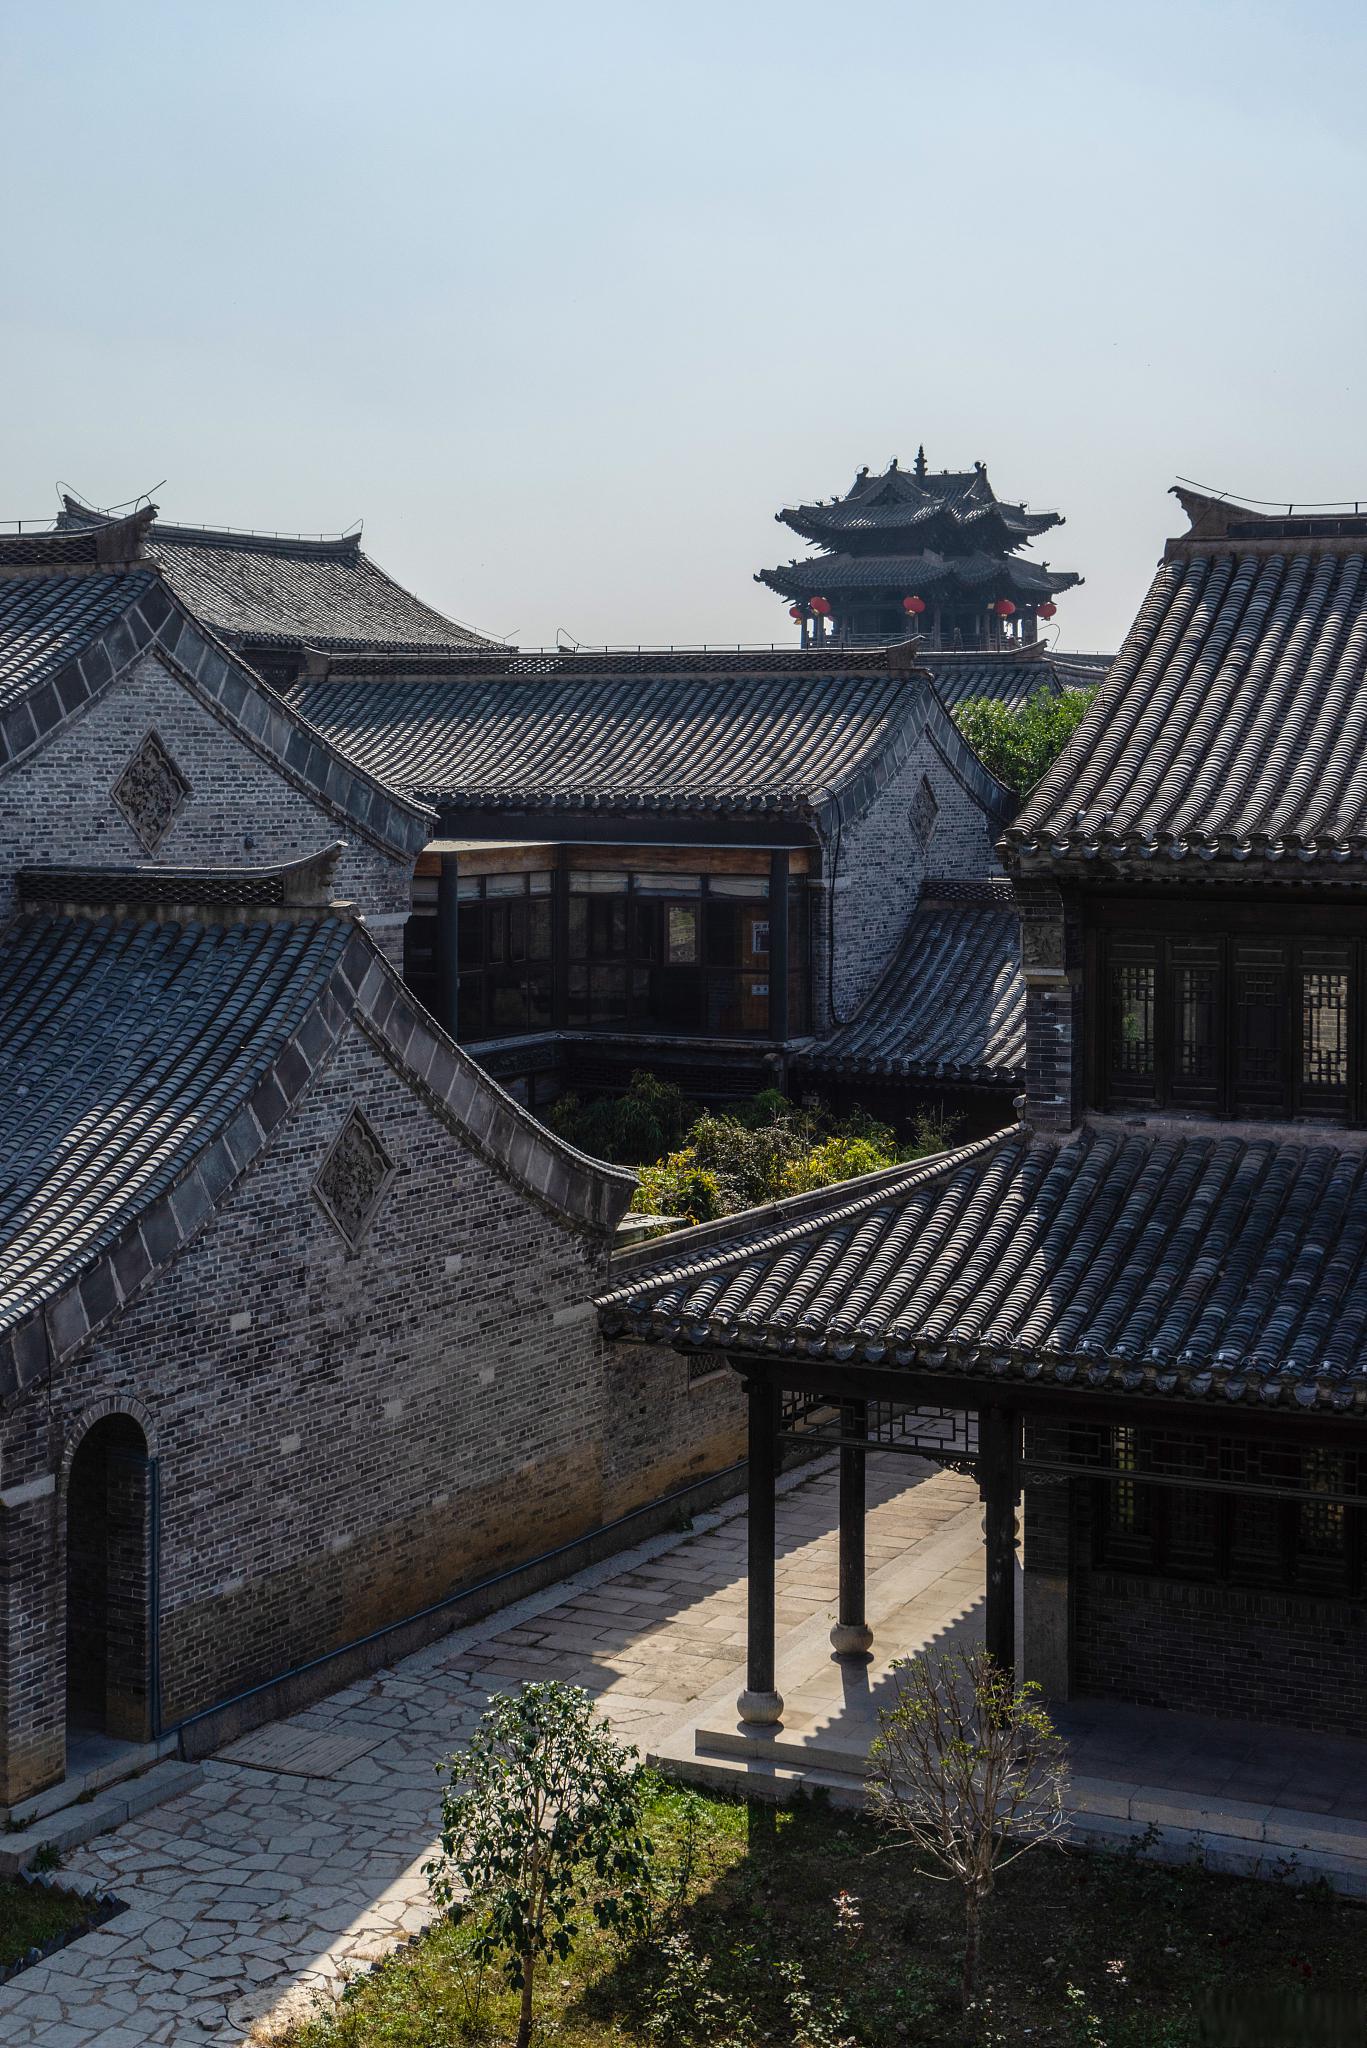 攻略 关圣古镇是一个充满历史和文化气息的旅游景点,位于襄阳市樊城区